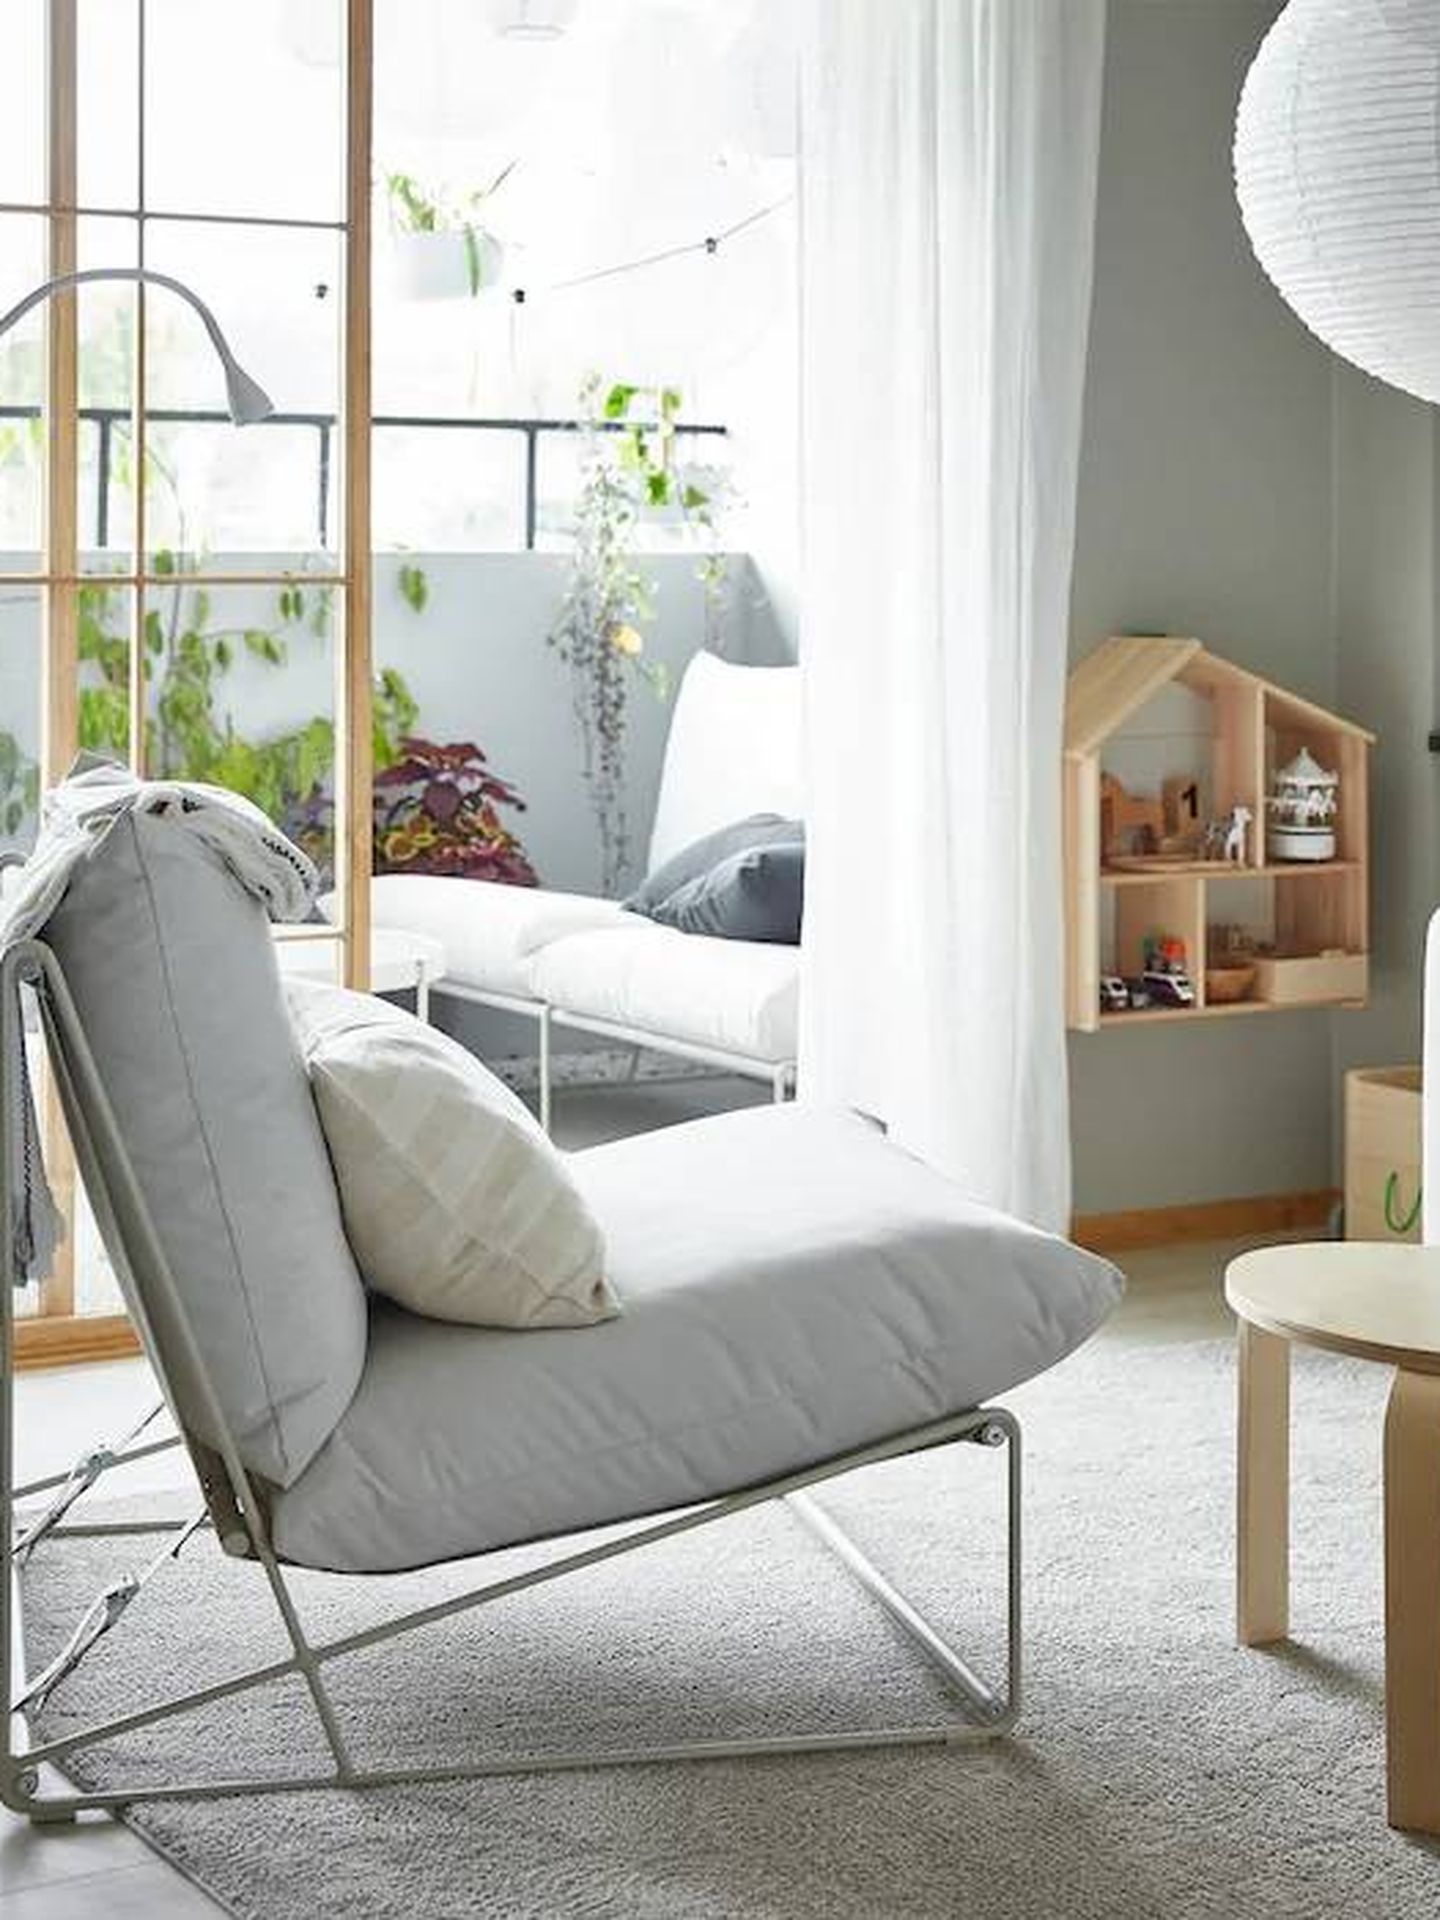 Los colores blancos y la luz no deben faltar, como en esta estancia de Ikea. (Cortesía)